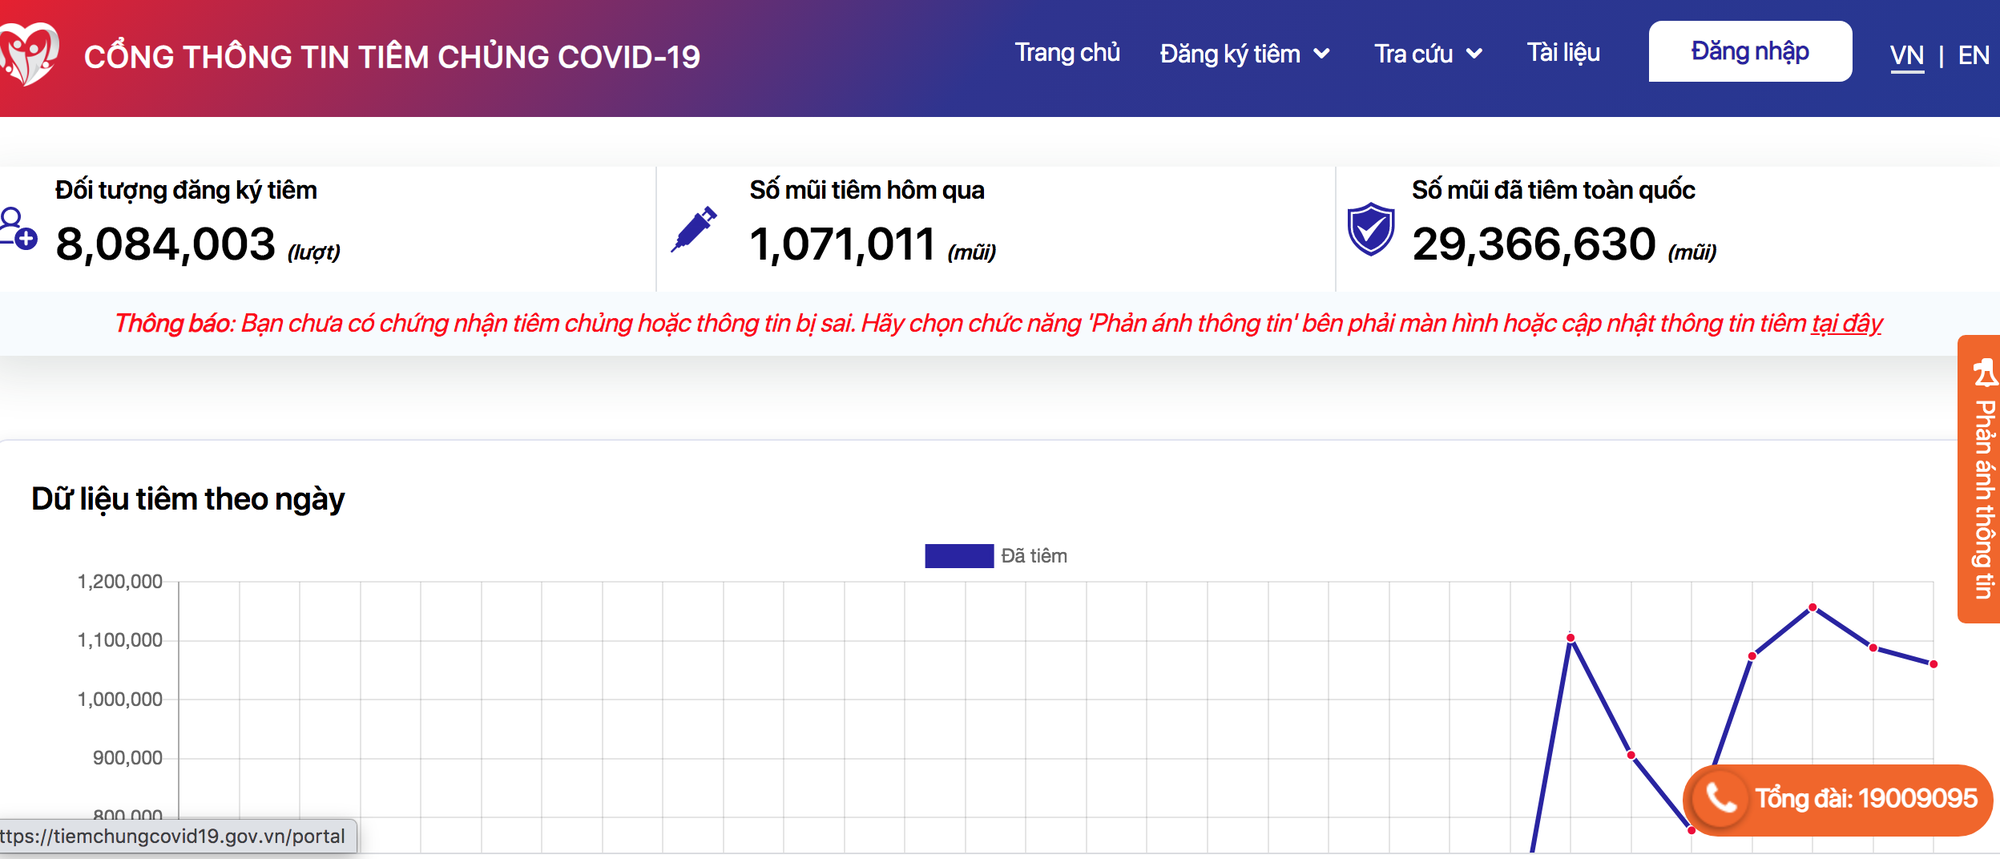 800.000 người gửi phản ánh về việc truy vấn thông tin tiêm chủng Covid-19 - Ảnh 1.